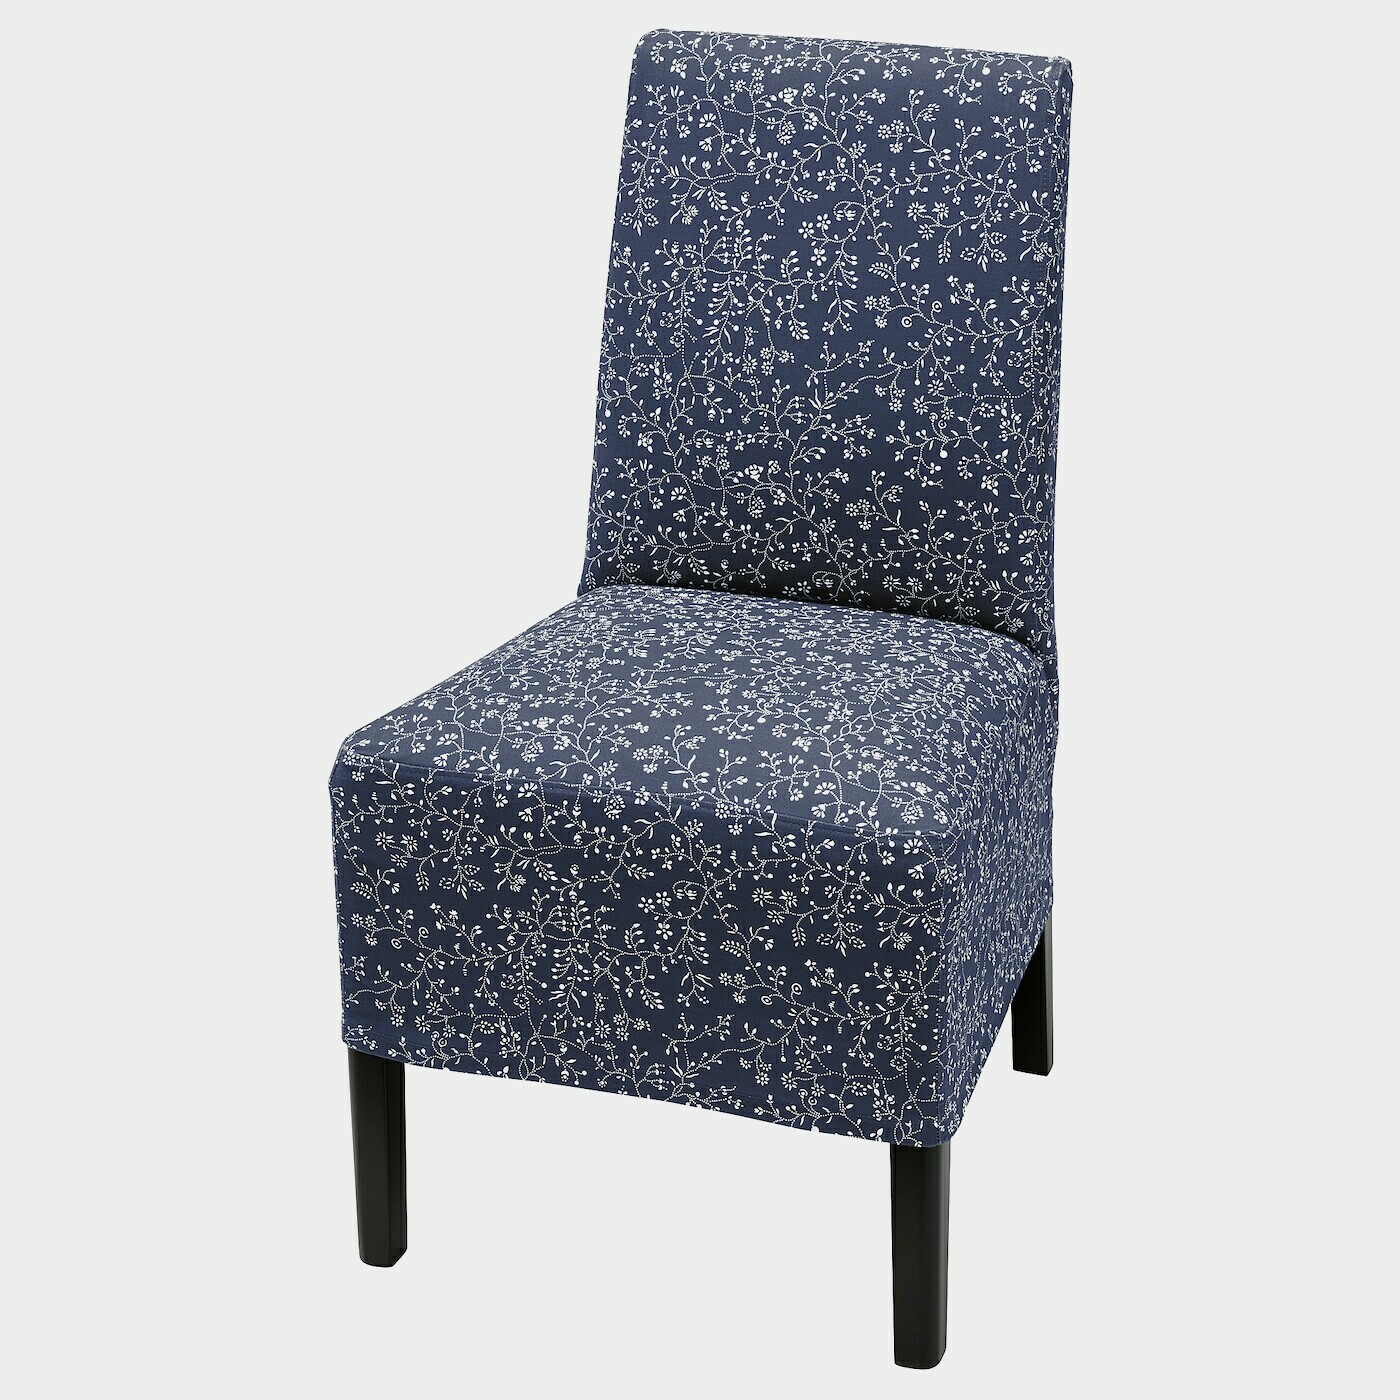 BERGMUND Stuhl mit halblangem Bezug  -  - Möbel Ideen für dein Zuhause von Home Trends. Möbel Trends von Social Media Influencer für dein Skandi Zuhause.